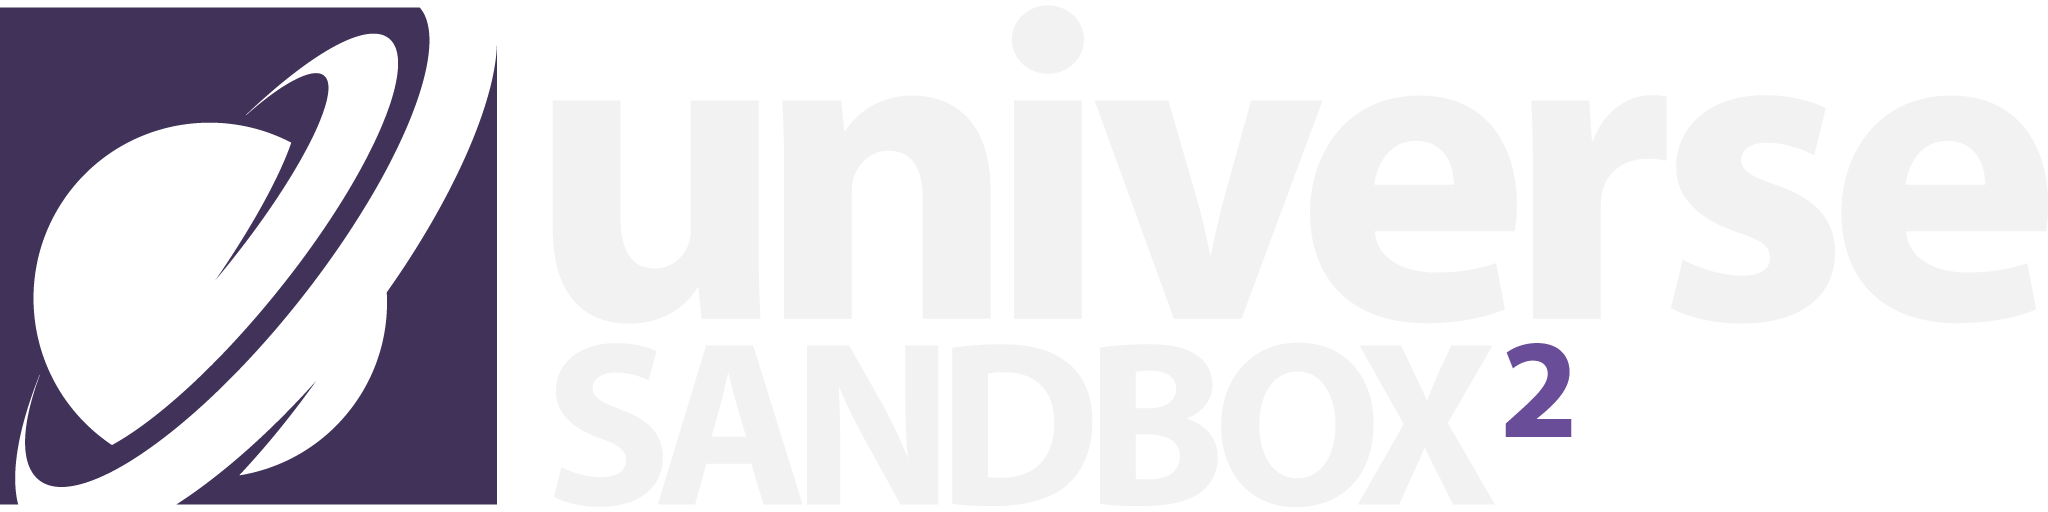 universe sandbox 2 logo